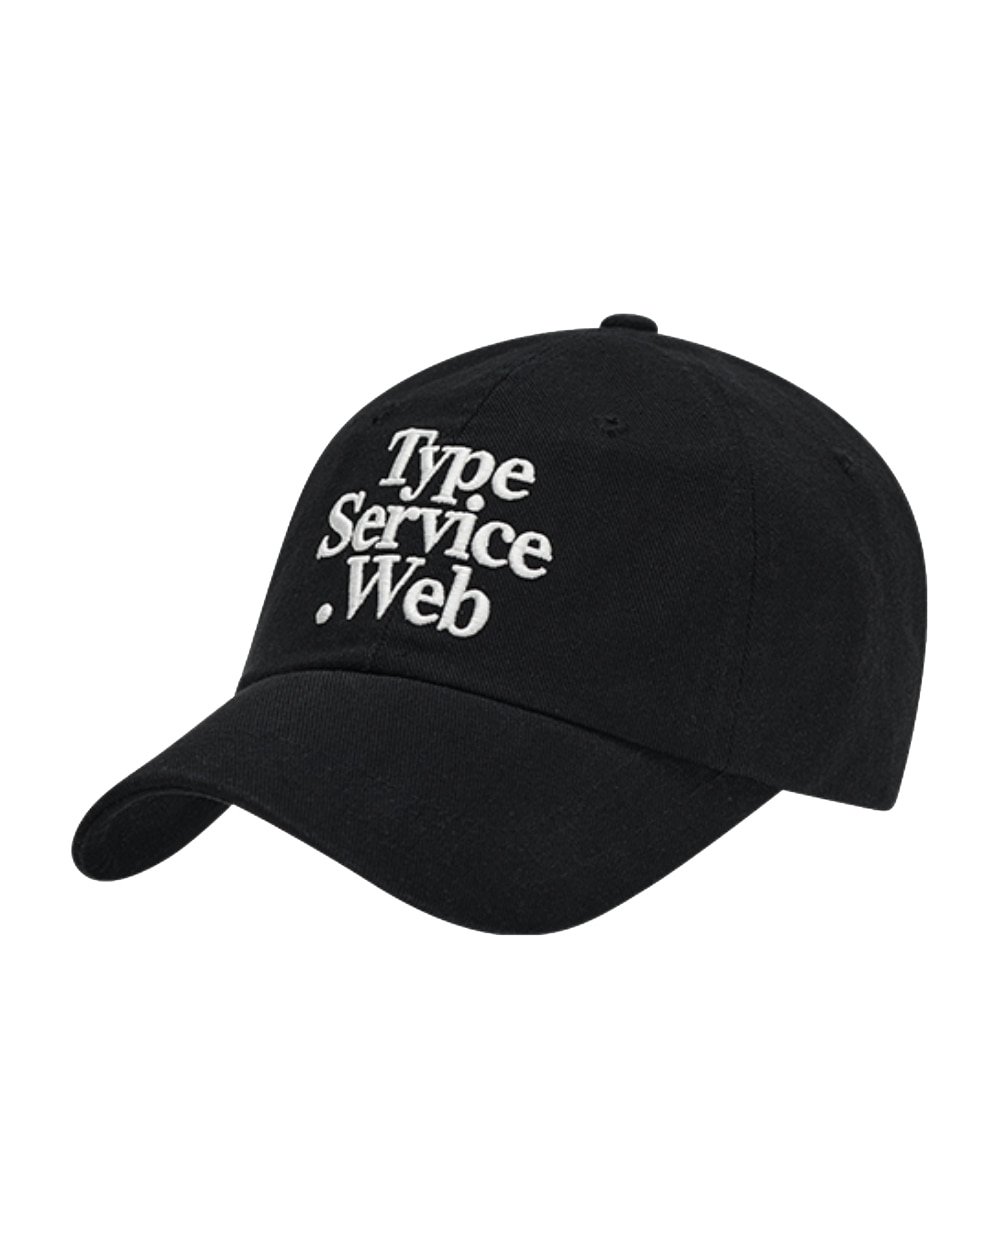 타입서비스 Typeservice Web Cap (Black)